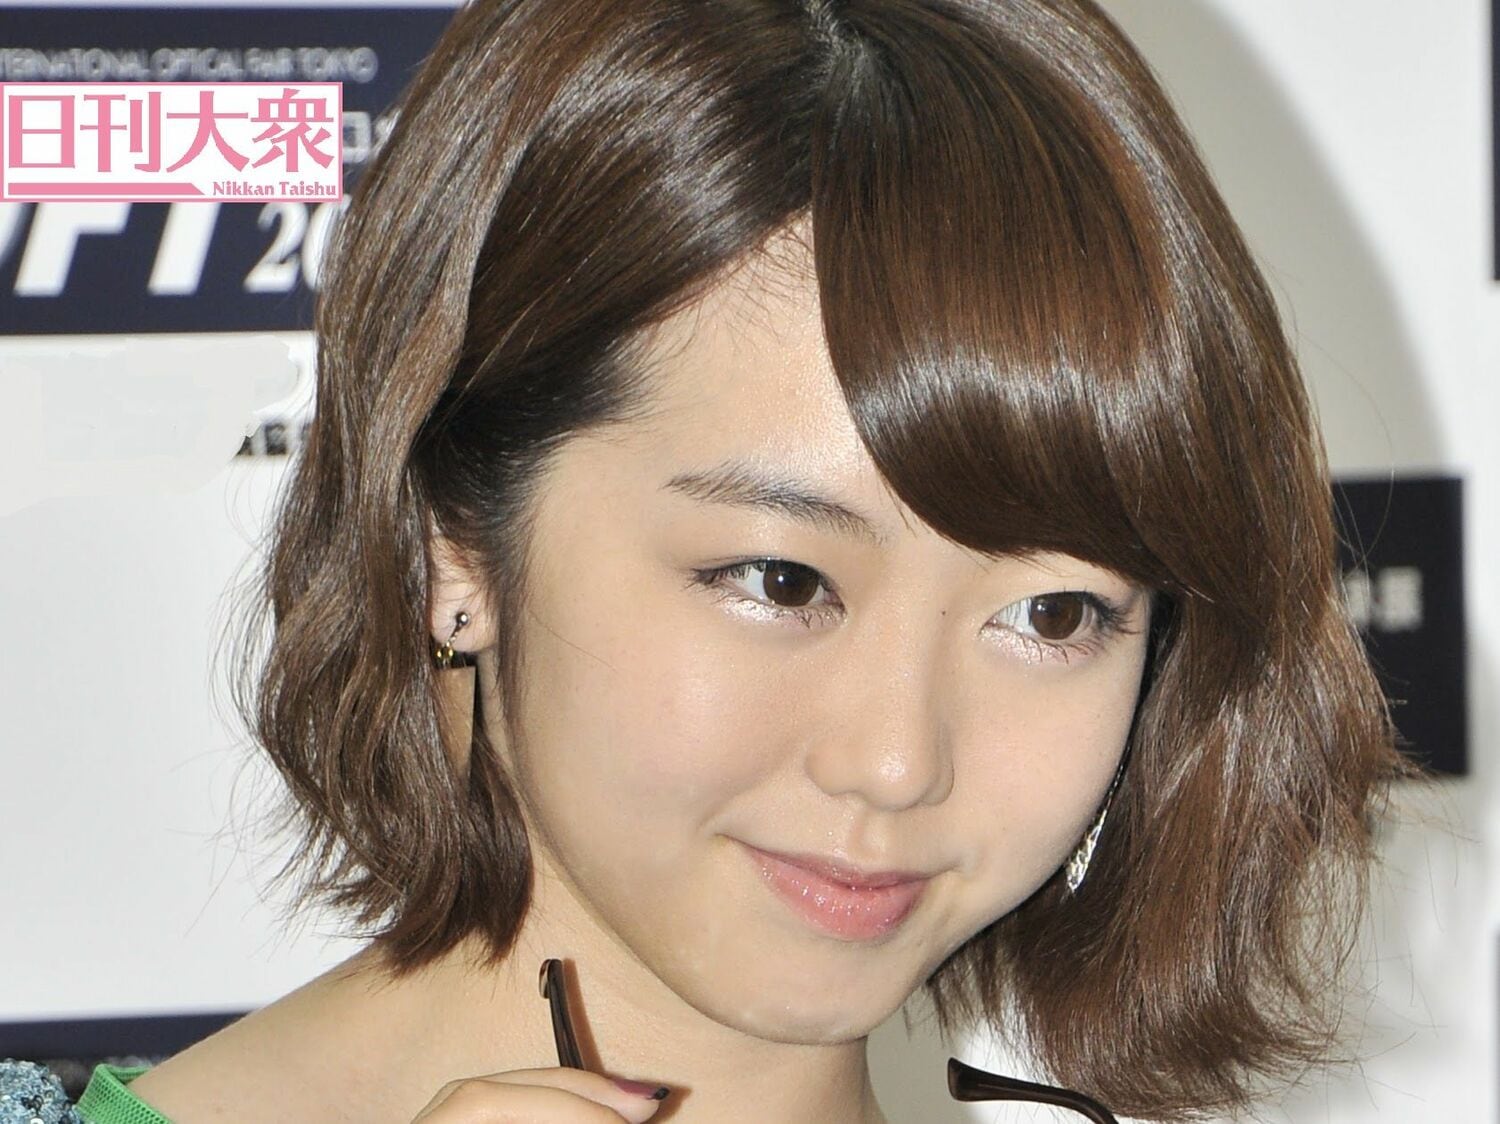 AKB48峯岸みなみ「顔見りゃ欲が丸出し」!? 8年続くスキャンダルの呪縛の画像